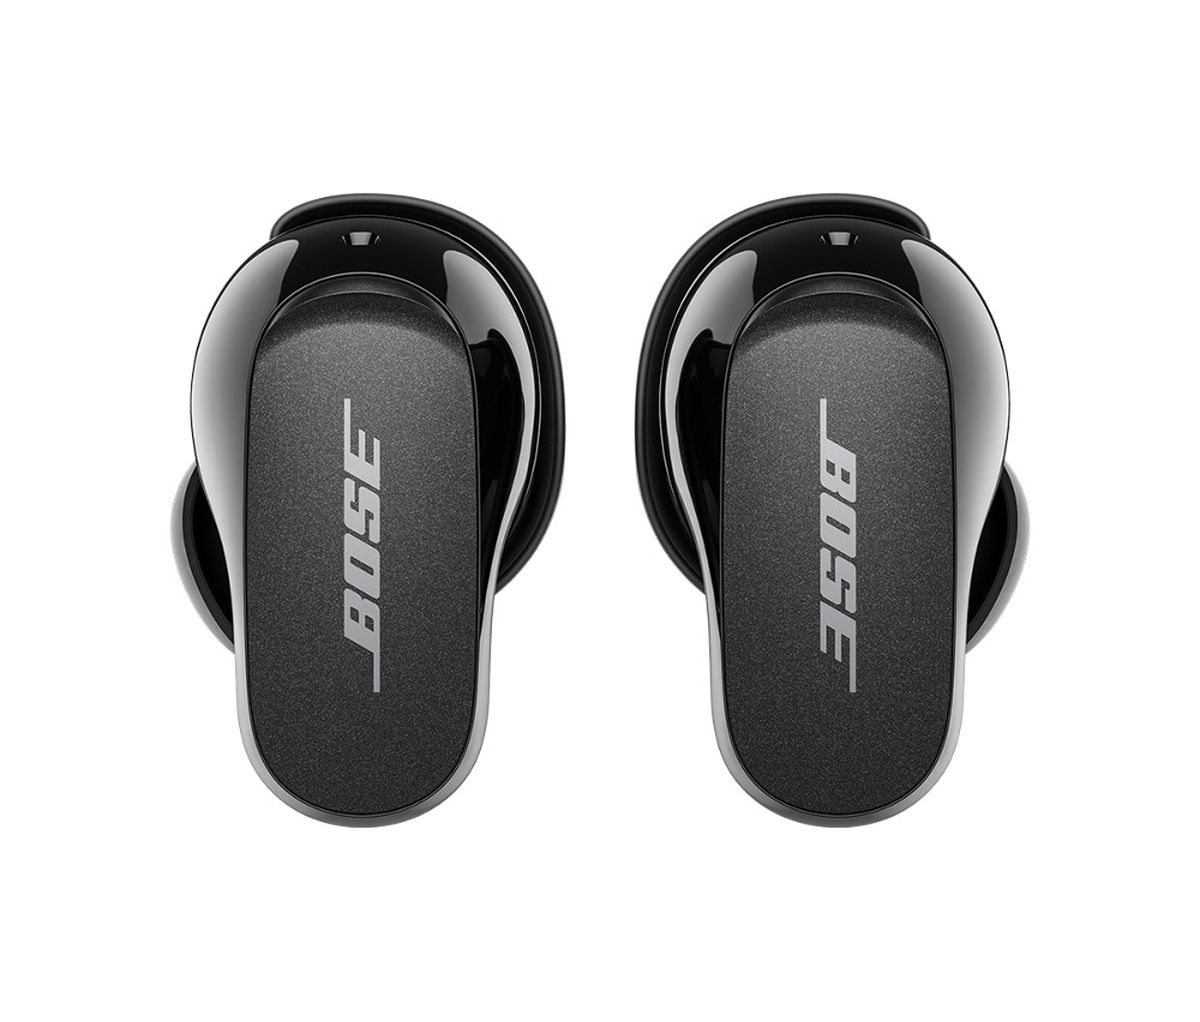  Nuevos auriculares Bose QuietComfort II, inalámbricos,  Bluetooth, los mejores auriculares intraurales con cancelación de ruido  personalizada y sonido, triple negro